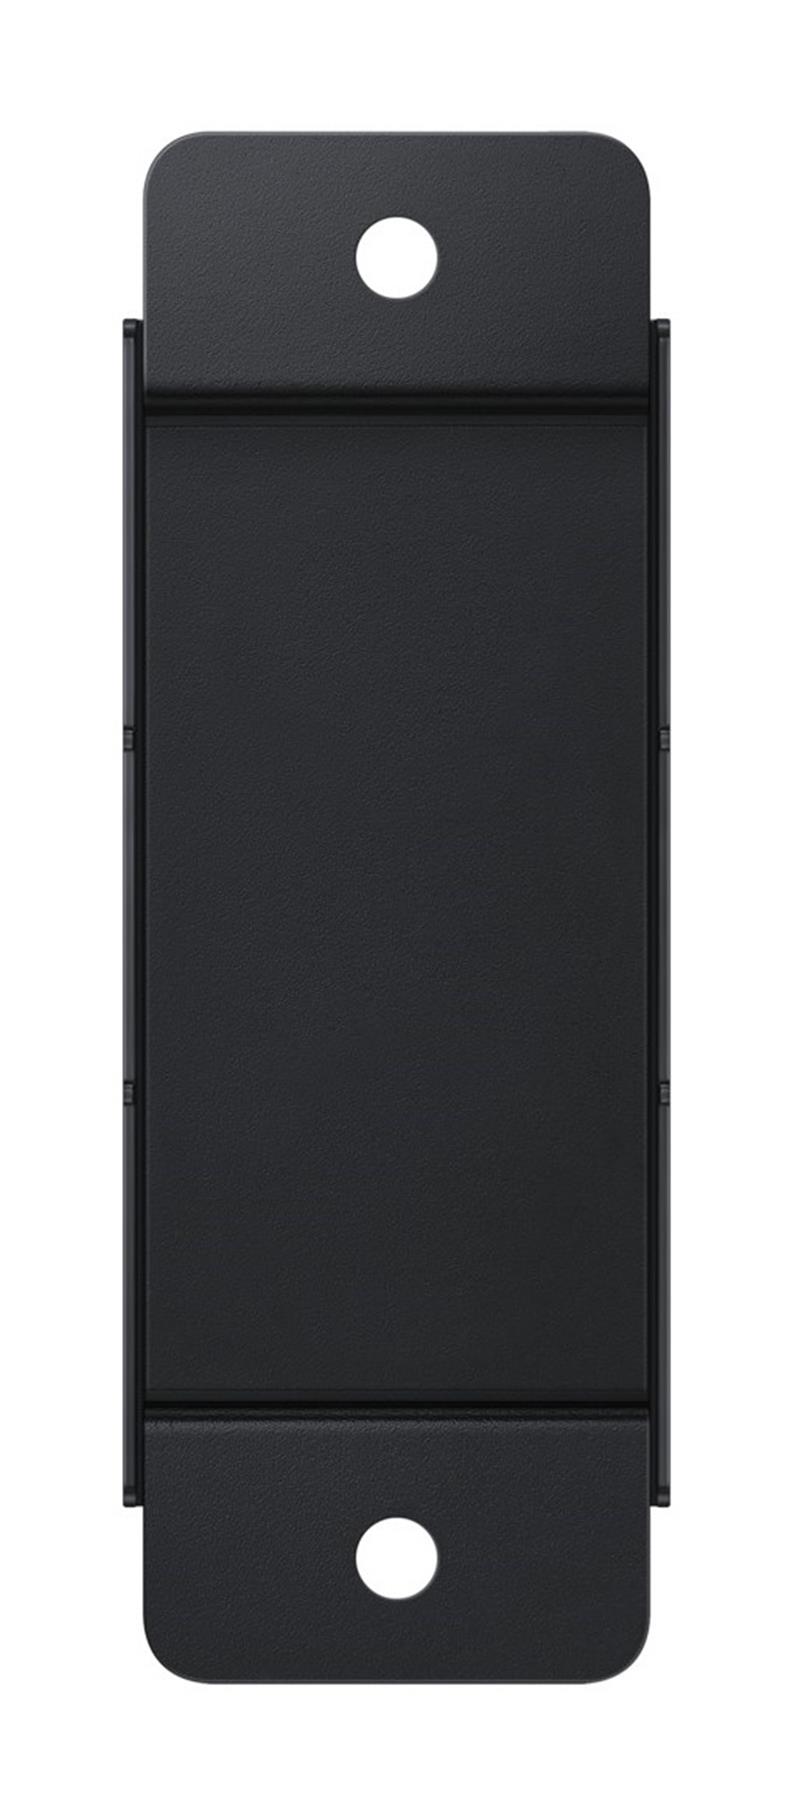 Samsung WMN-WM65R bevestiging voor signage-beeldschermen 165,1 cm (65"") Zwart